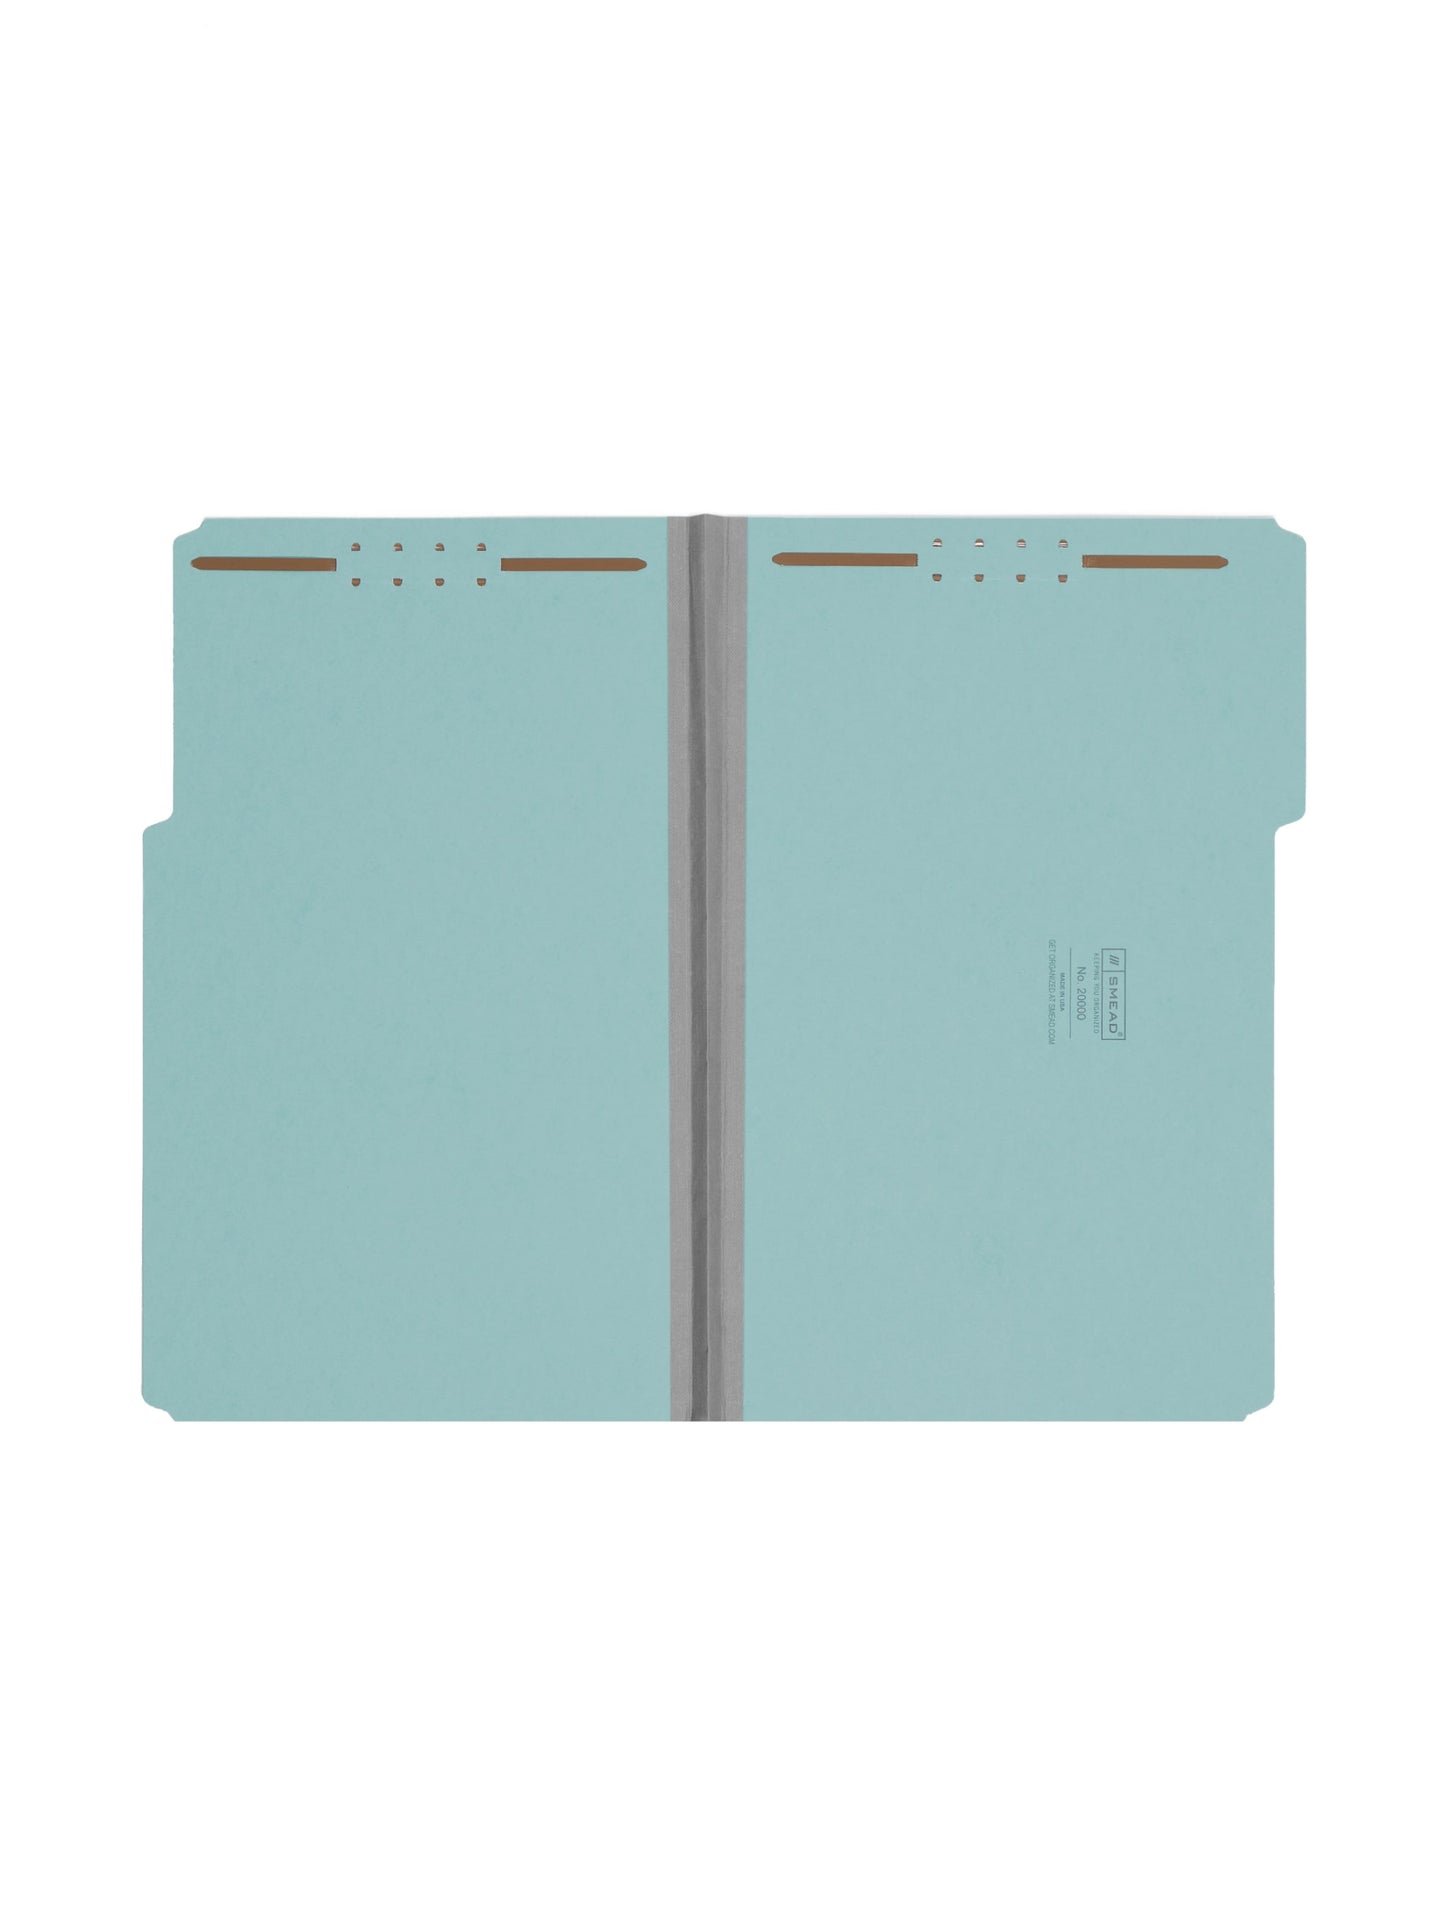 Pressboard Fastener File Folders, 1 inch Expansion, Blue Color, Legal Size, Set of 25, 086486200004